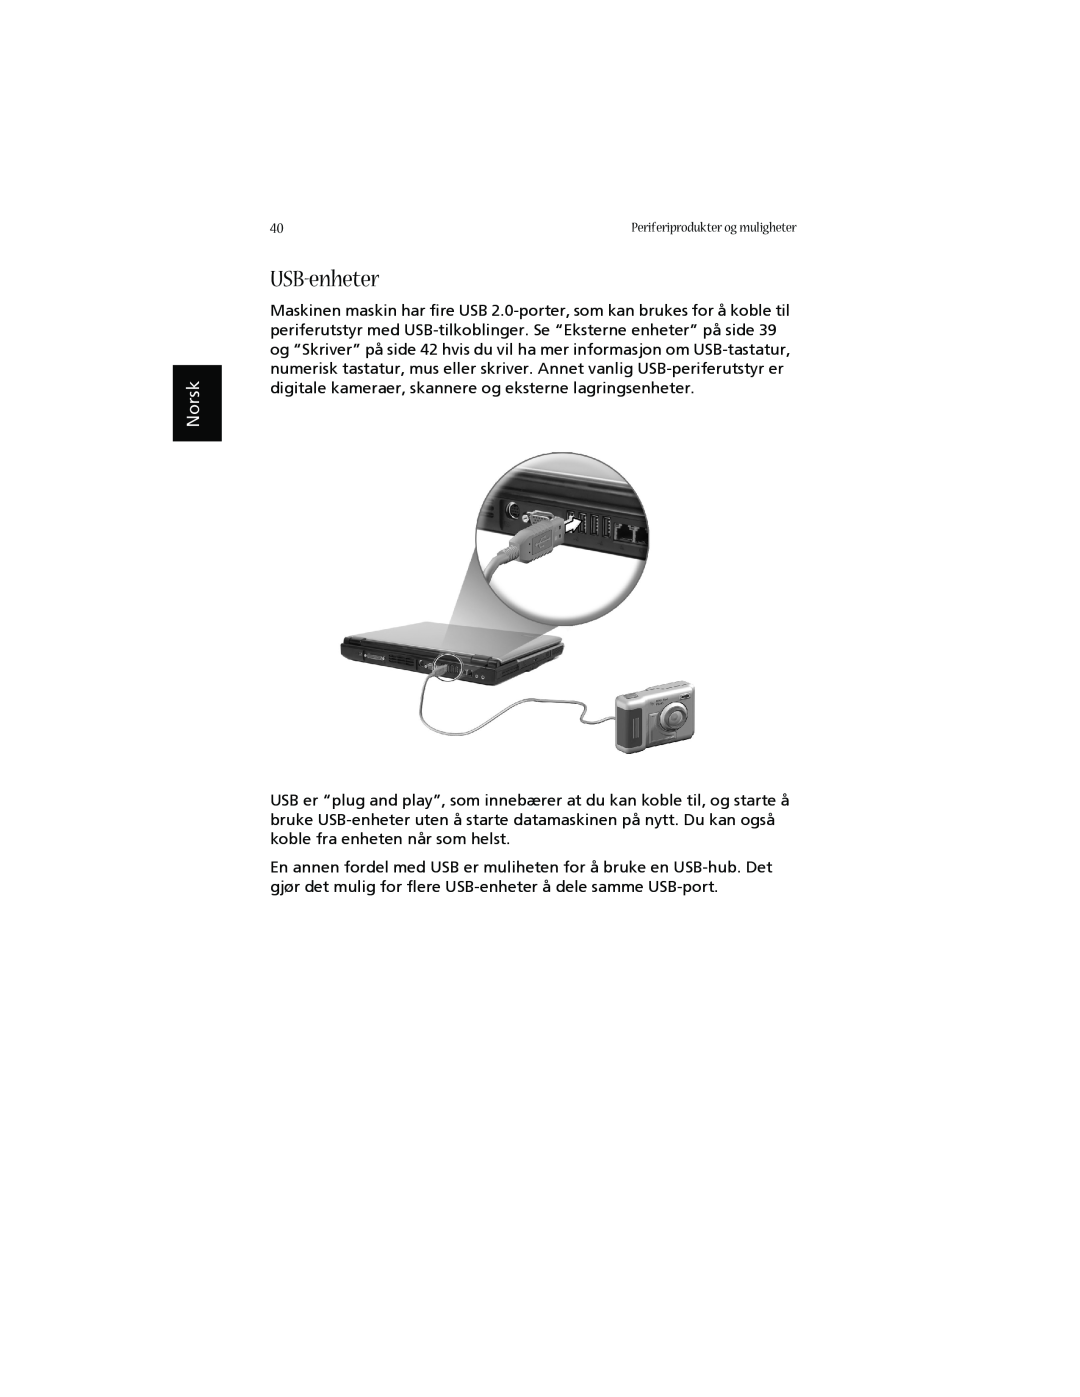 Acer 1660 manual USB-enheter, Norsk, Periferiprodukter og muligheter 